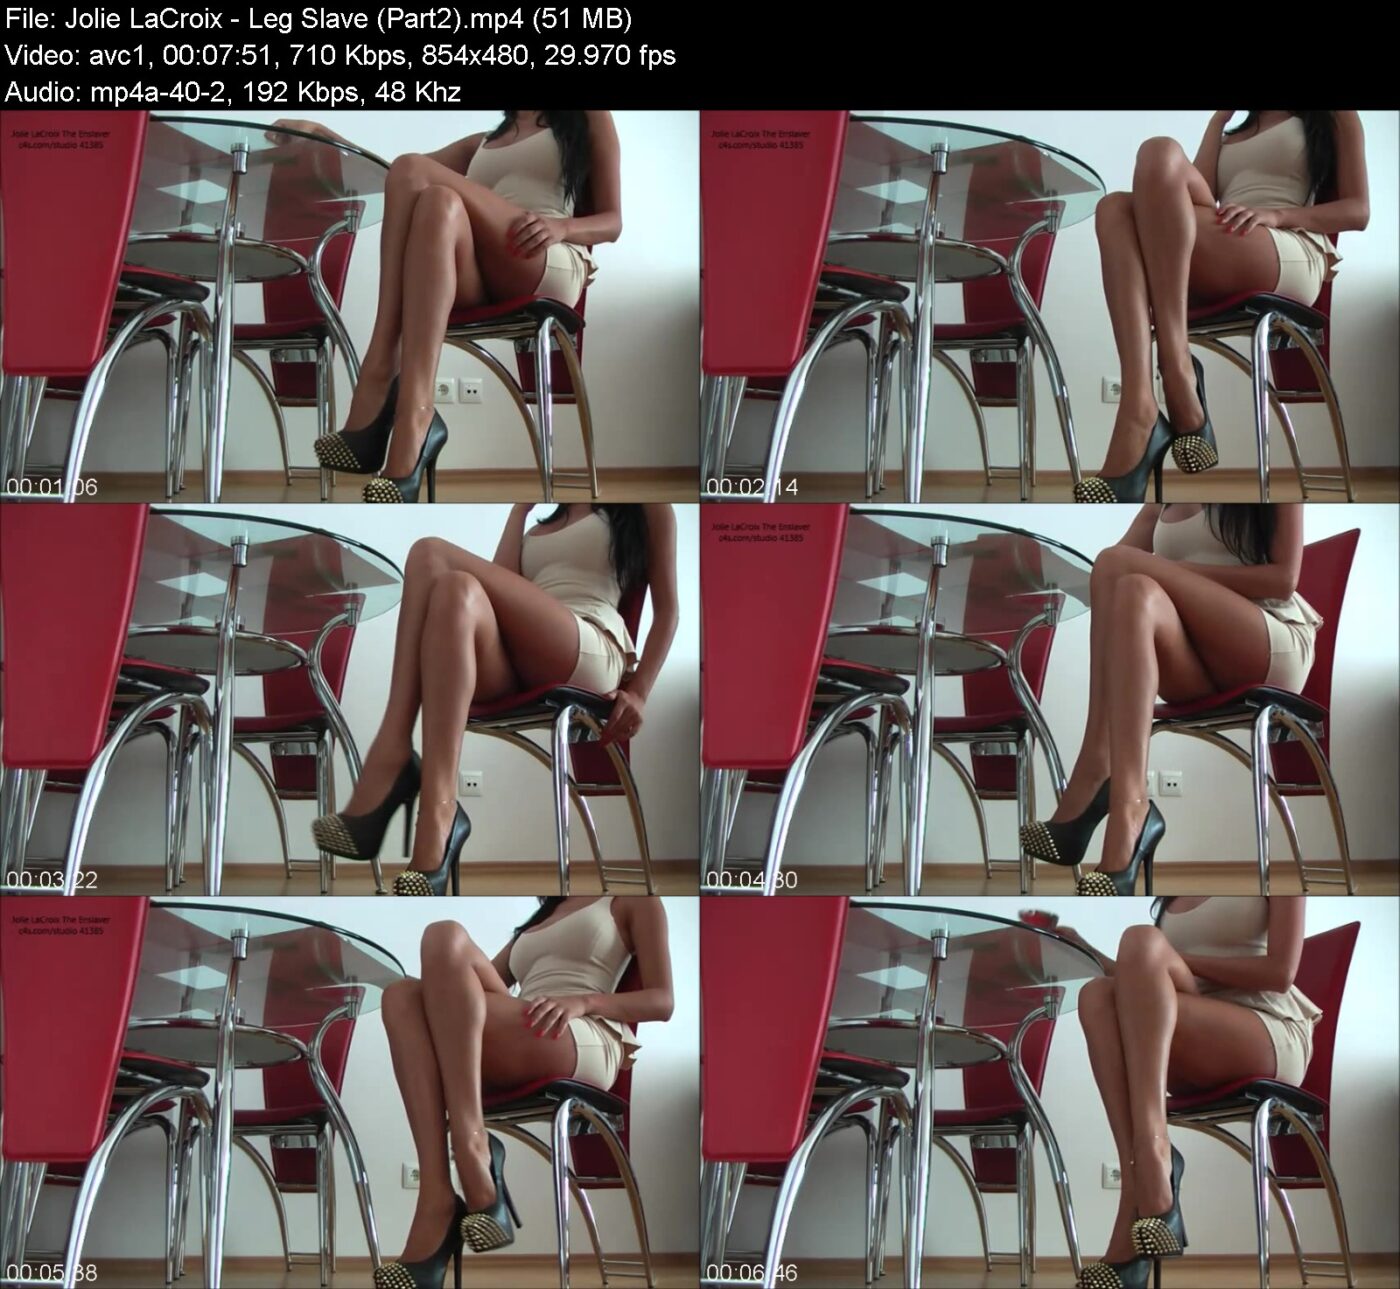 Actress: Jolie LaCroix. Title and Studio: Leg Slave (Part2)